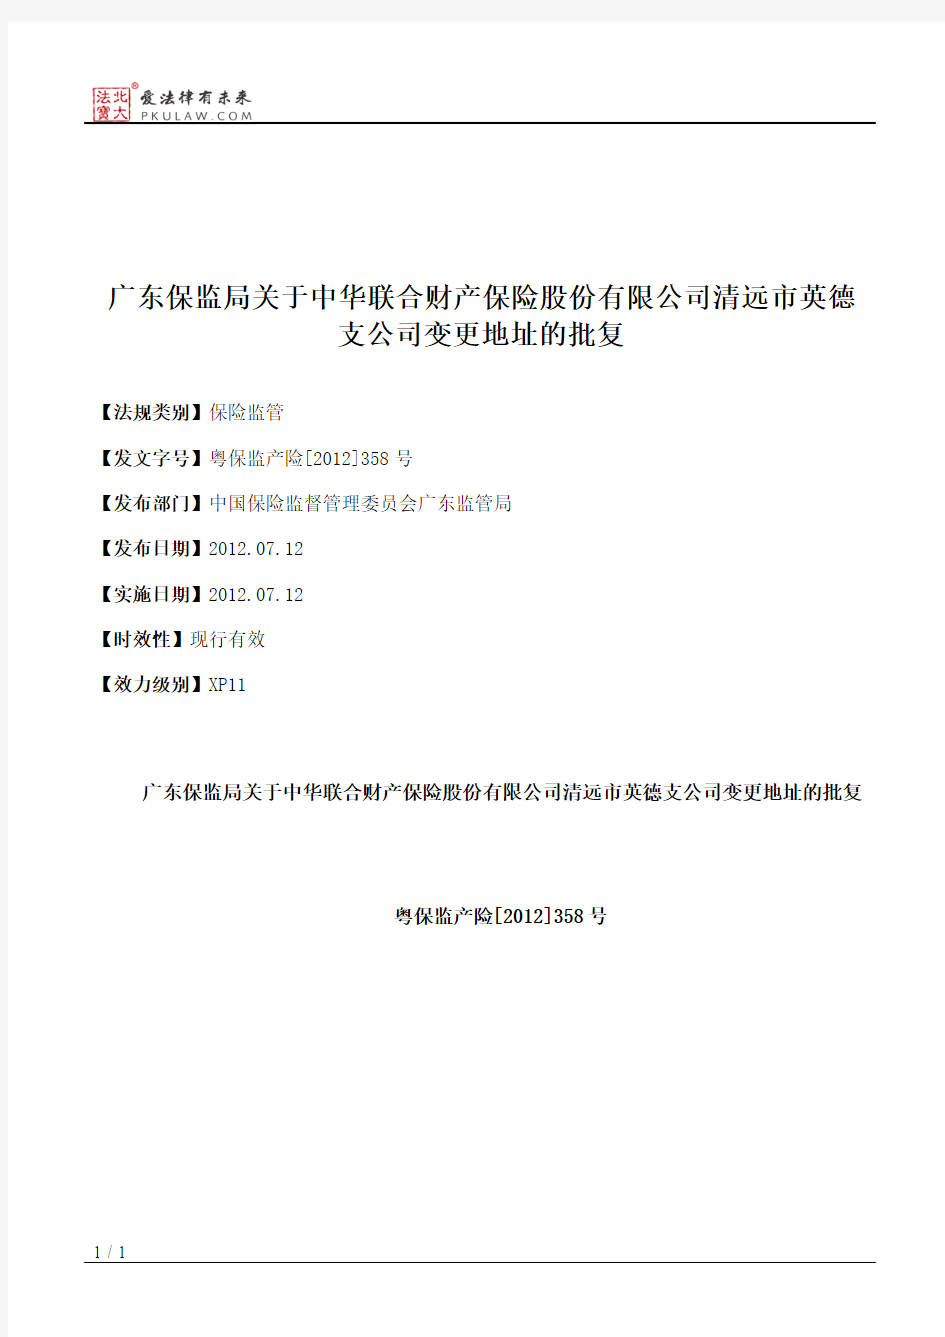 广东保监局关于中华联合财产保险股份有限公司清远市英德支公司变